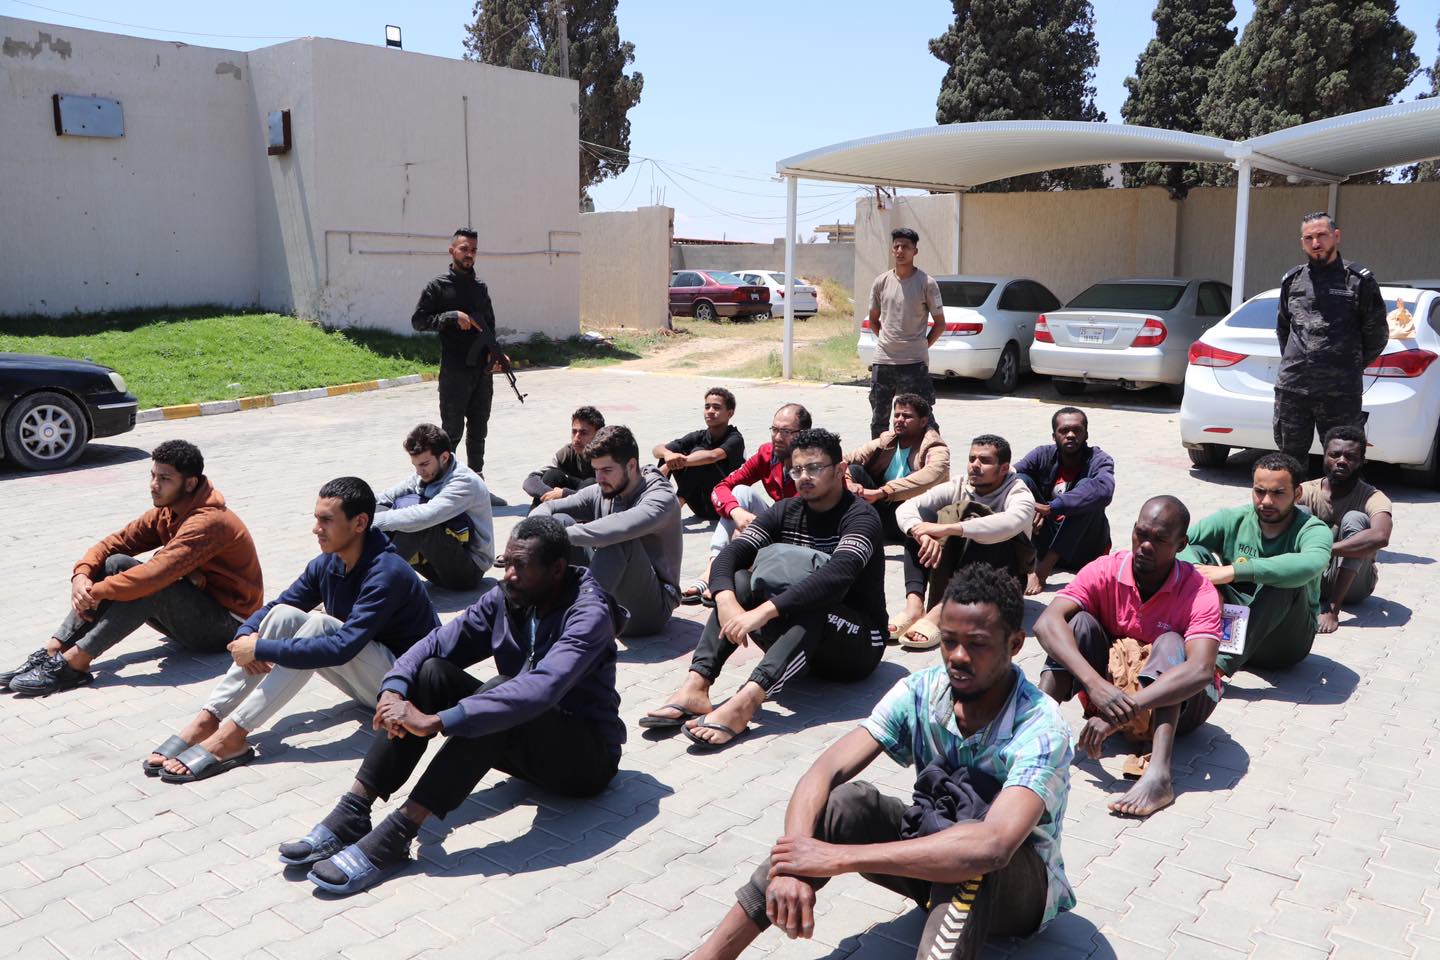 قوة دعم المديريات المنطقة الغربية تتمكن من ضبط مهاجرين من جنسيات عربية و إفريقية بمدينة زوارة.